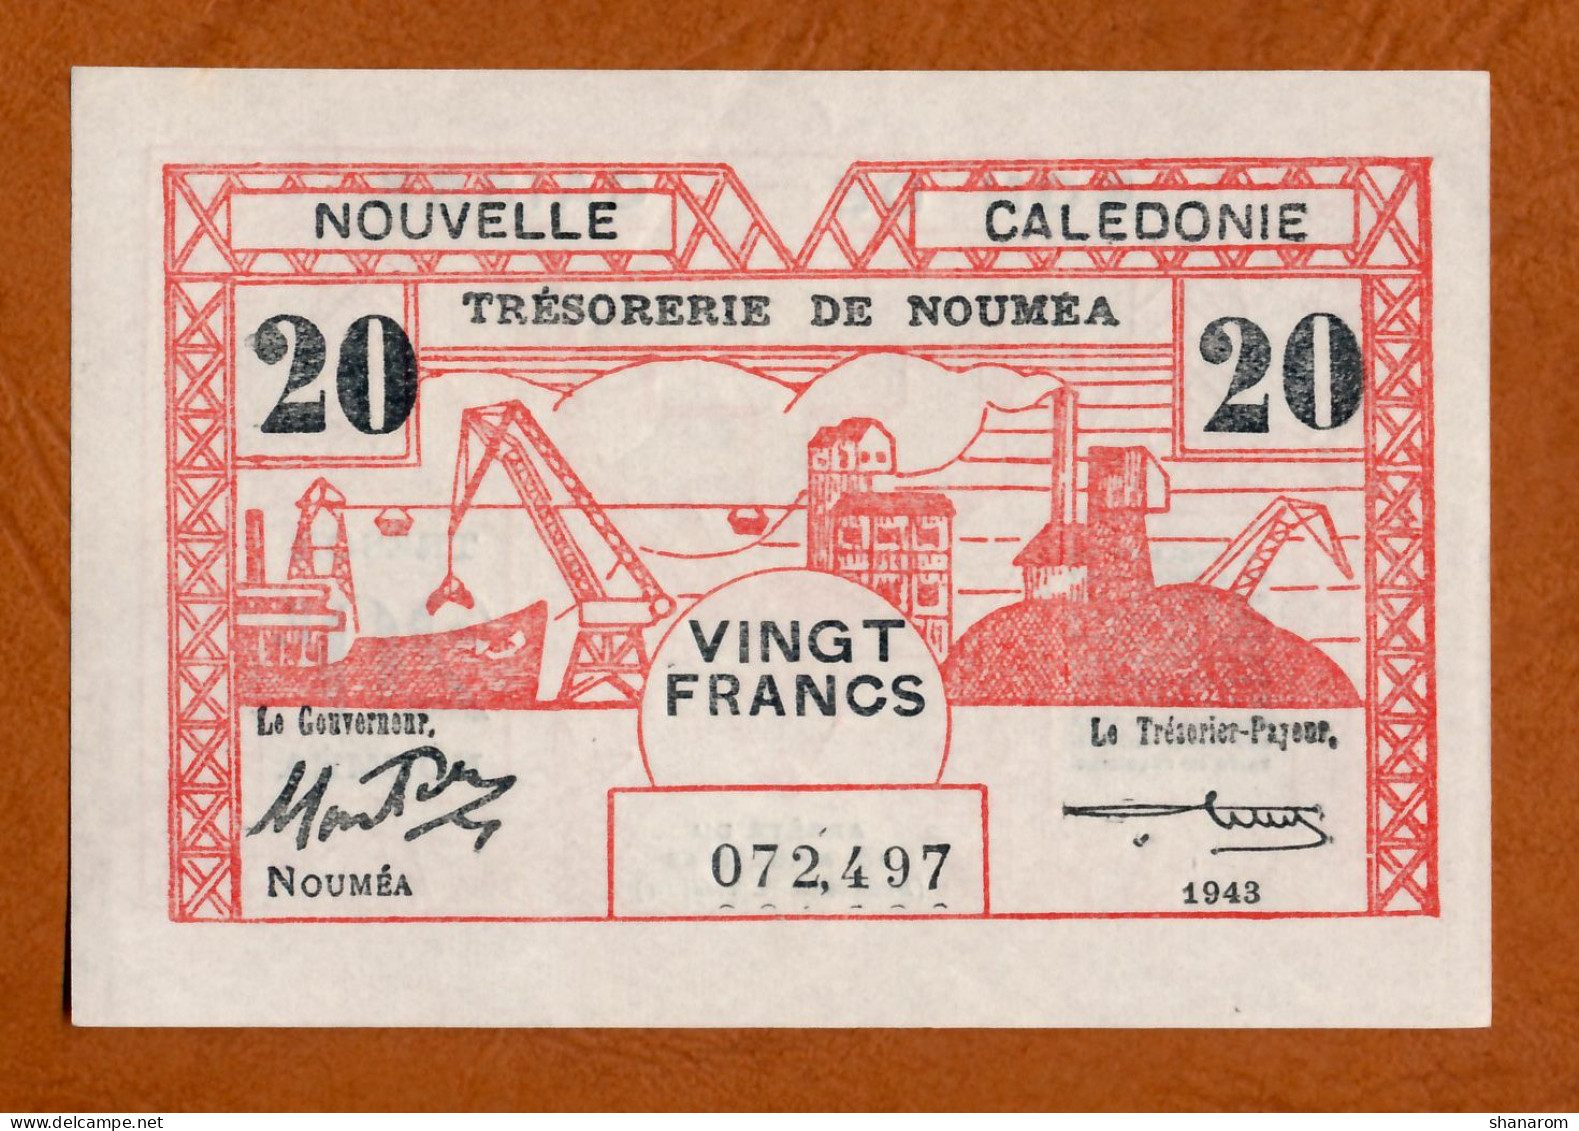 1943 // NOUVELLE CALEDONIE // TRESORERIE DE NOUMEA // Avril 1943 // Vingt Francs // XF+ / SUP+ - Nouvelle-Calédonie 1873-1985